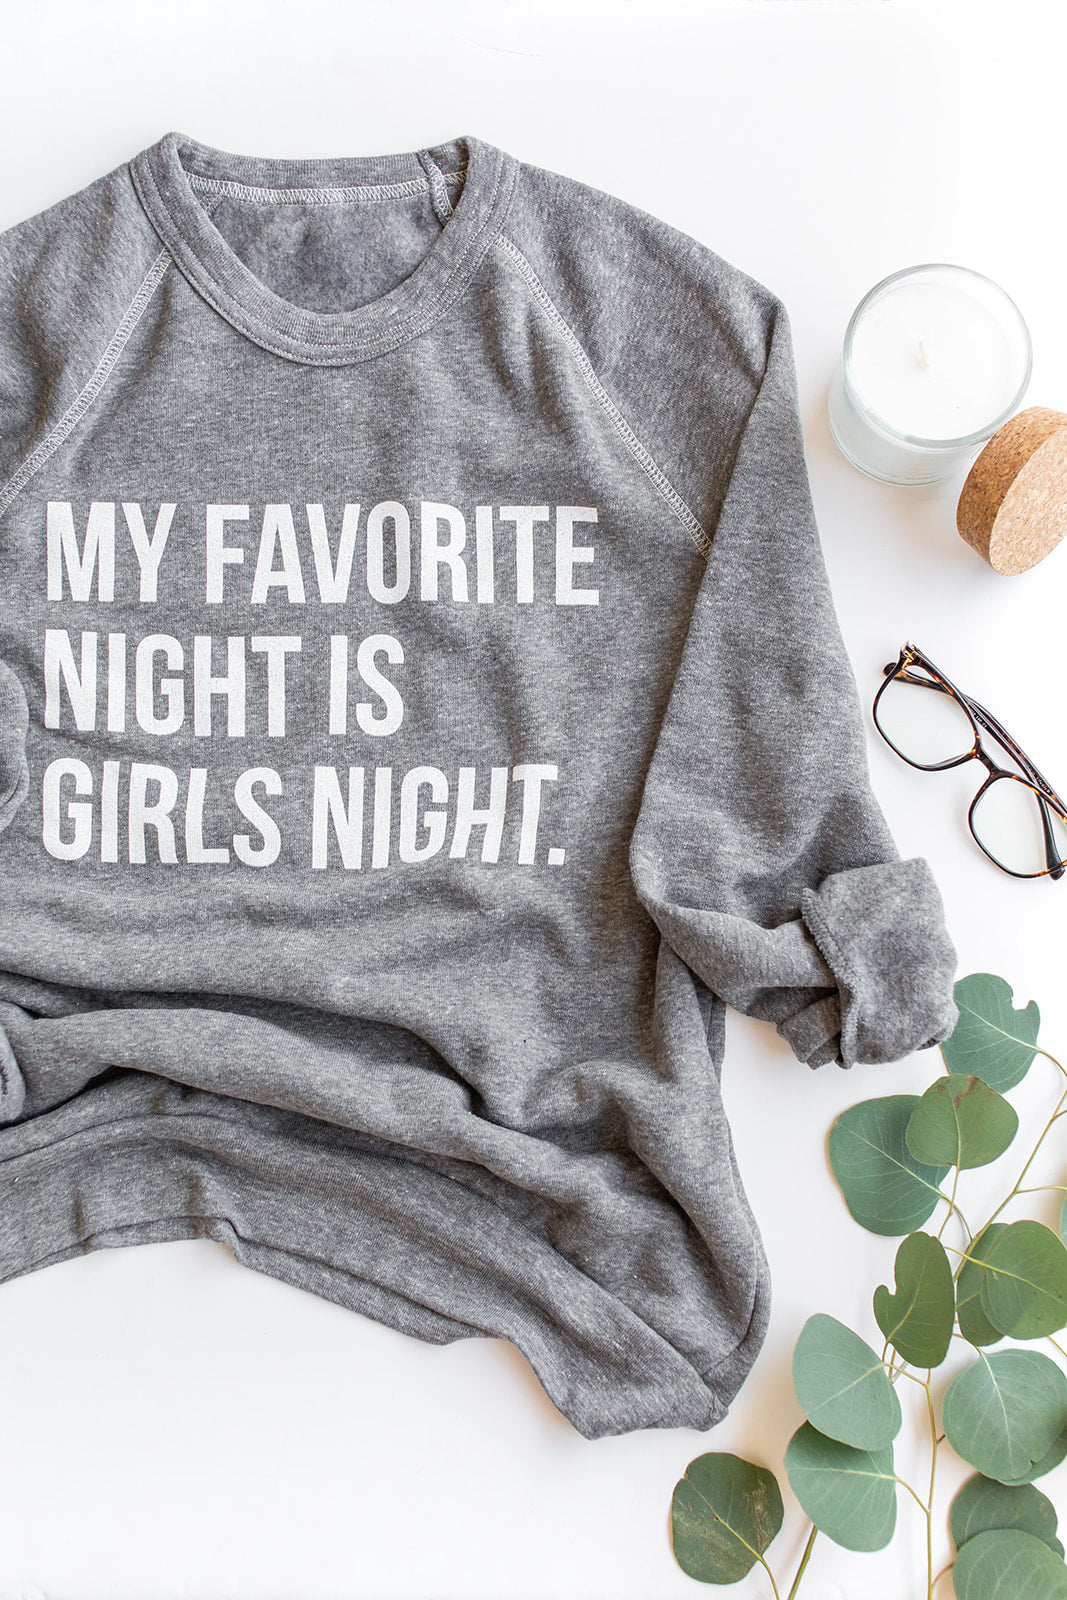 Original Girls Night Sweatshirt